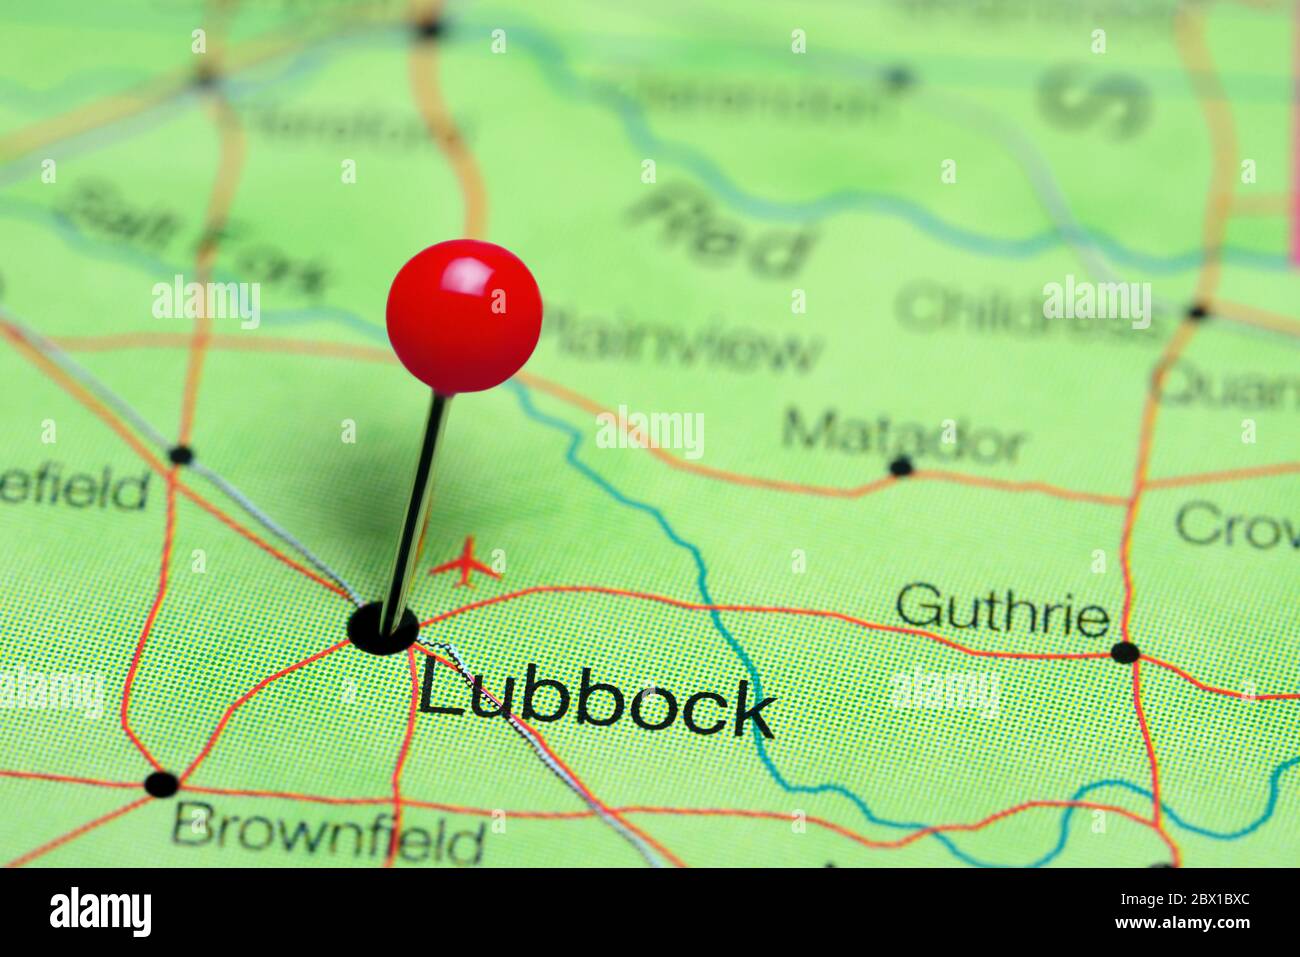 Lubbock cubrió un mapa de Texas, Estados Unidos Foto de stock